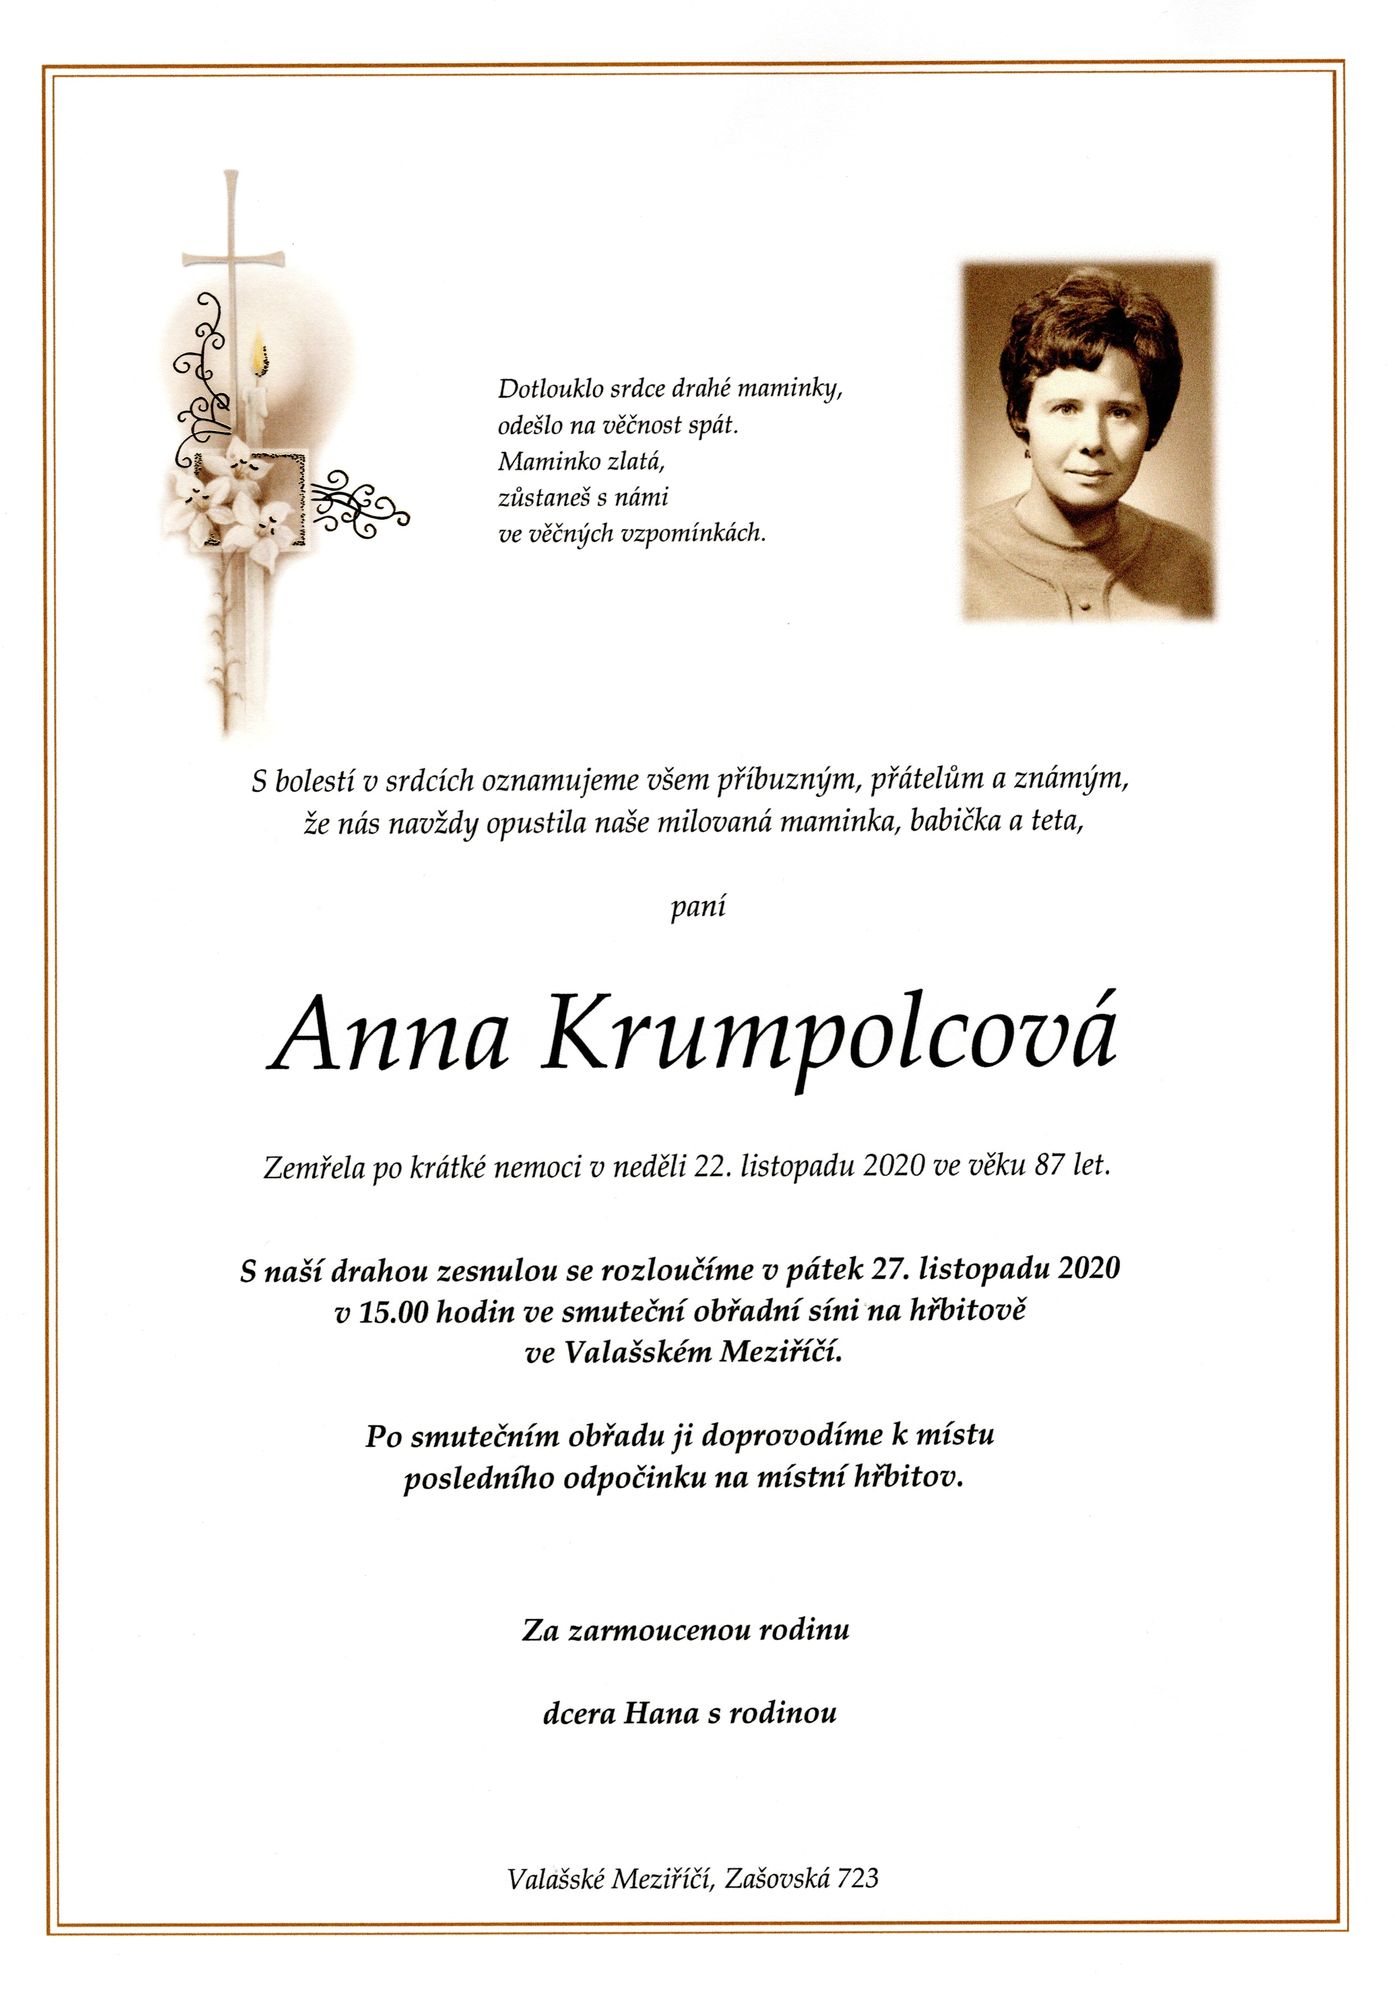 Anna Krumpolcová